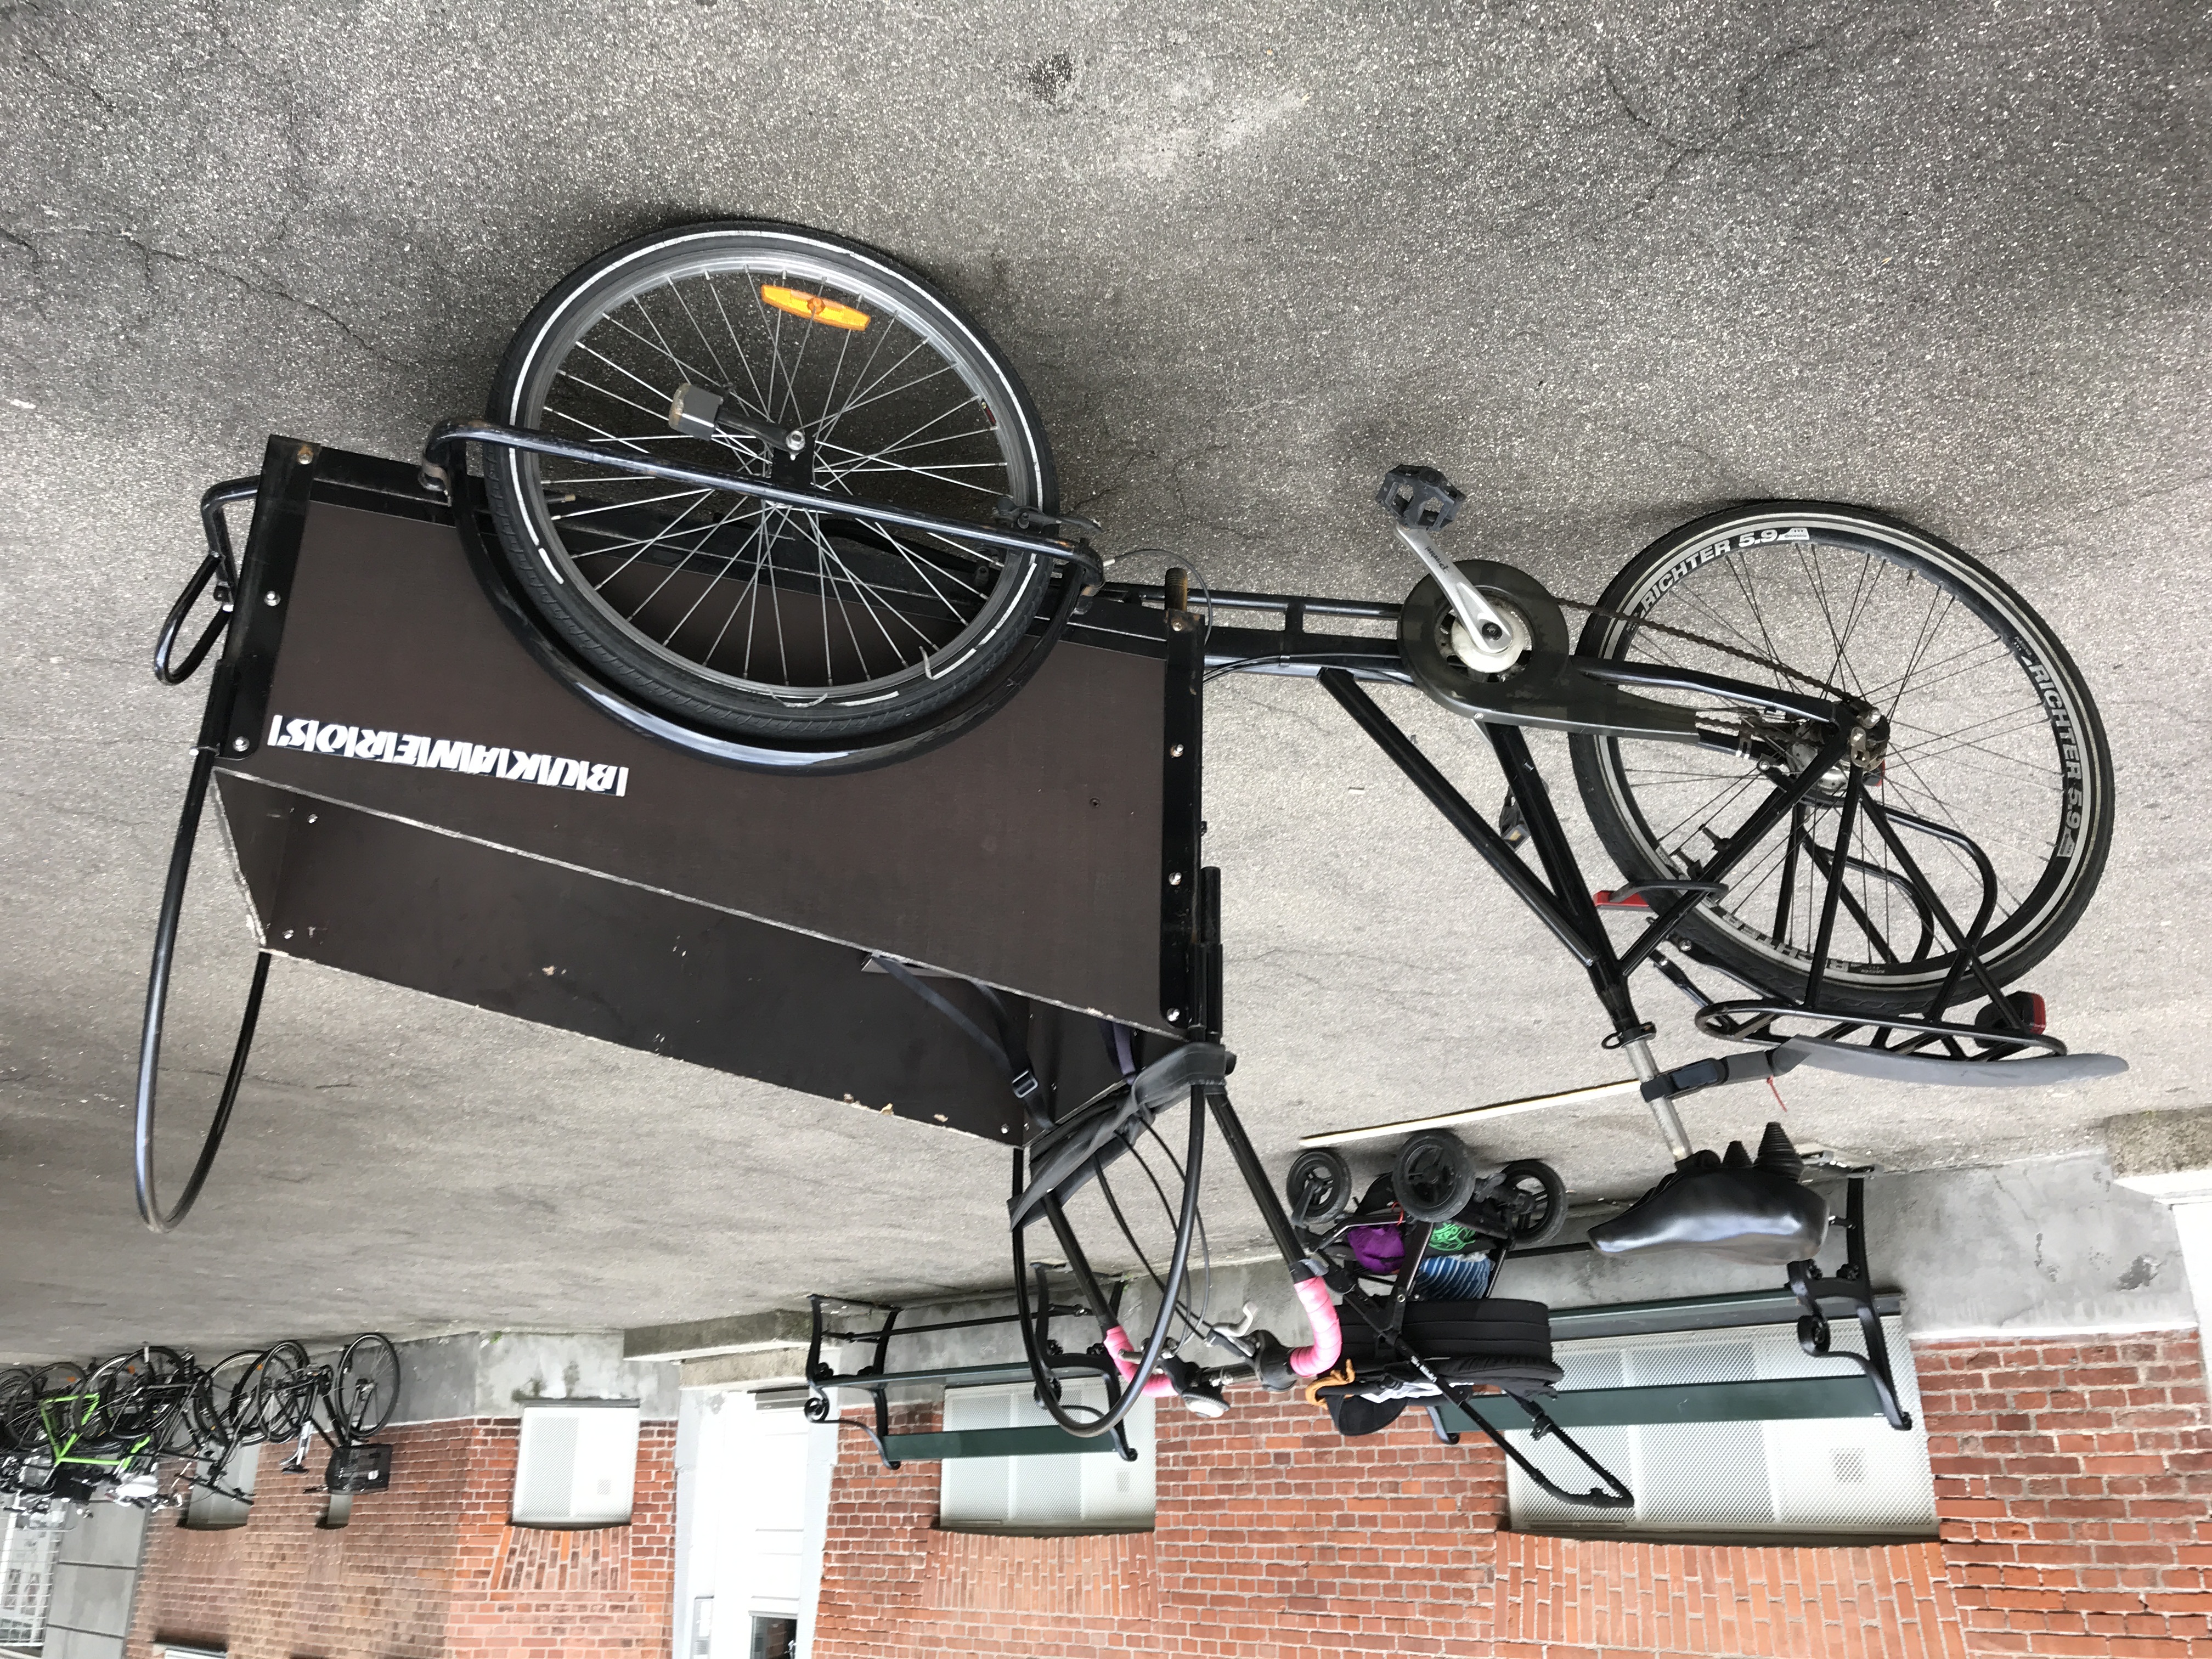 At hoppe jeg er glad mærke ShareOne udlejningsportal - Christiania cargo bike/ladcykel